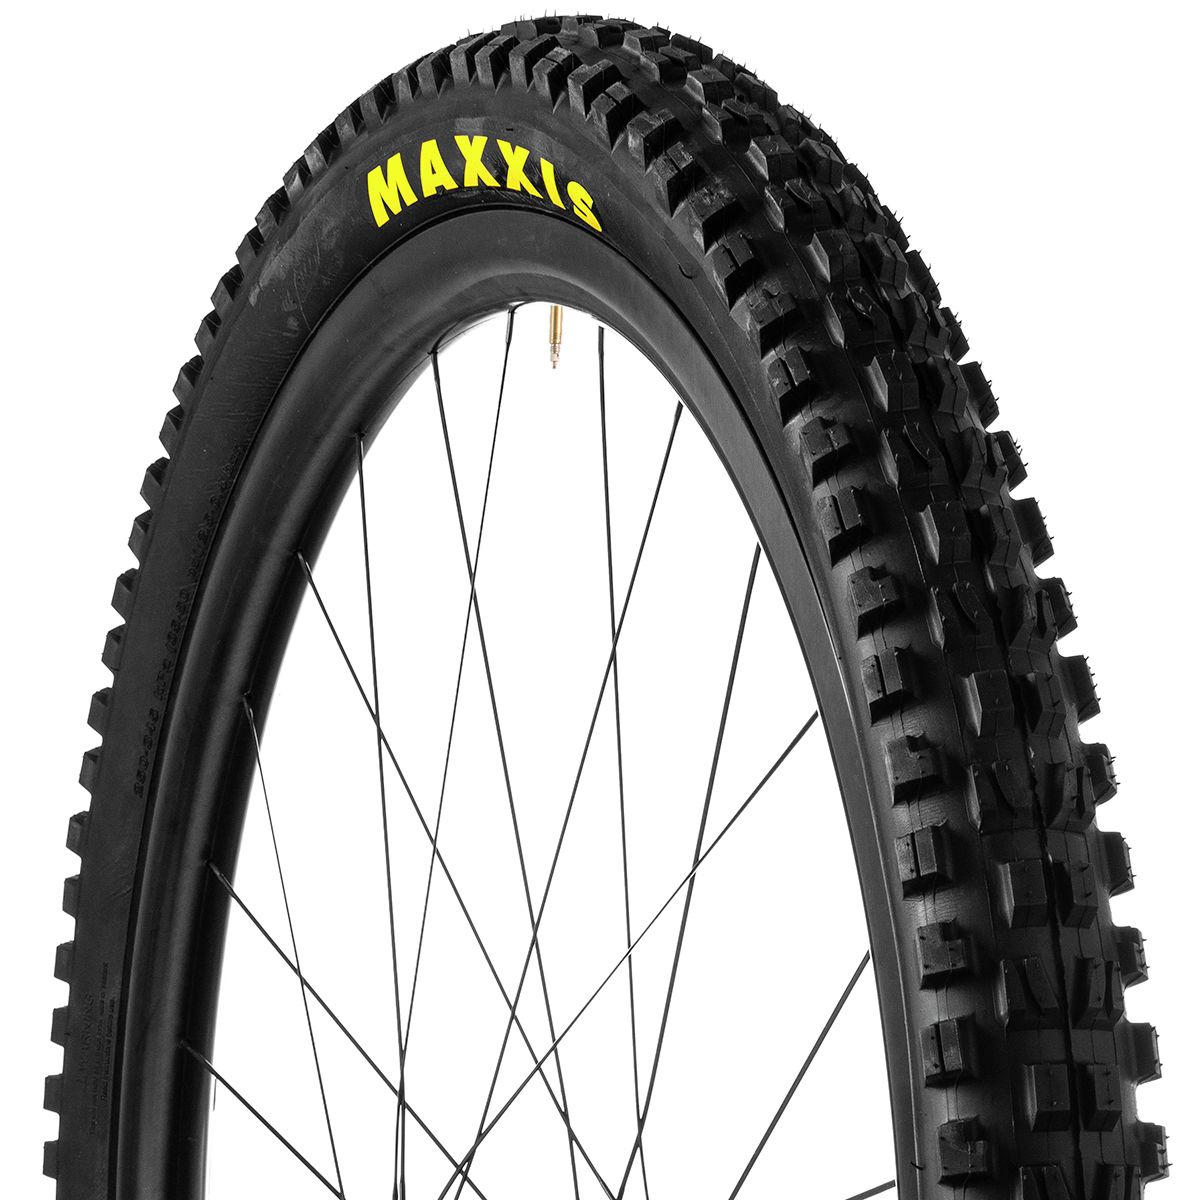 Maxxis Minion DHF DH Wide Trail 3CG/TR 29in Tire WT/3CG/TR, DH/Maxx Grip, 29x2.5